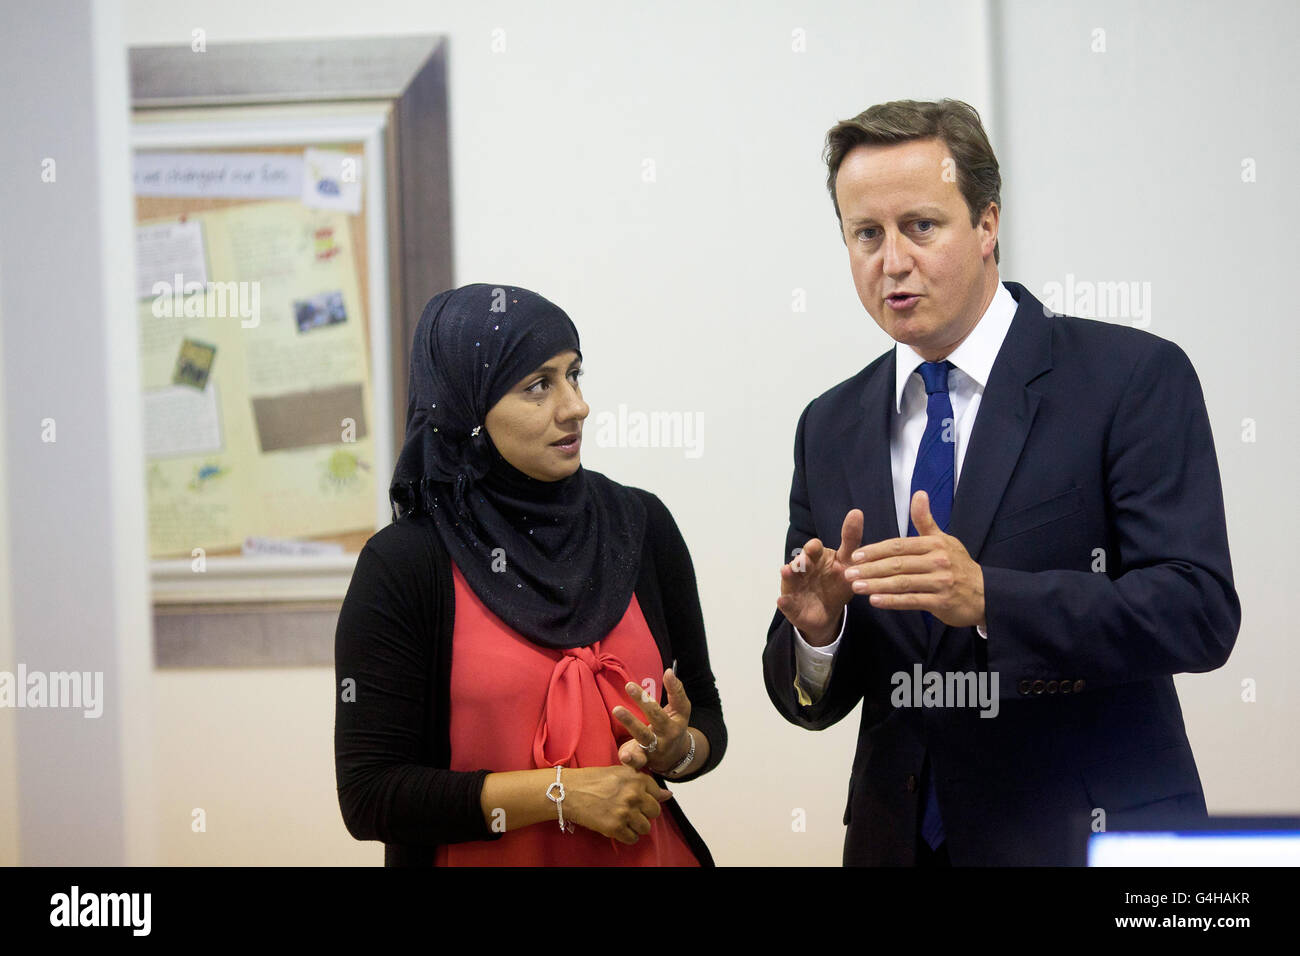 Il primo Ministro David Cameron ha incontrato Shahida DIN durante una visita agli uffici dell'A4e (Action for Employment) a Brixton, nel sud di Londra. Foto Stock